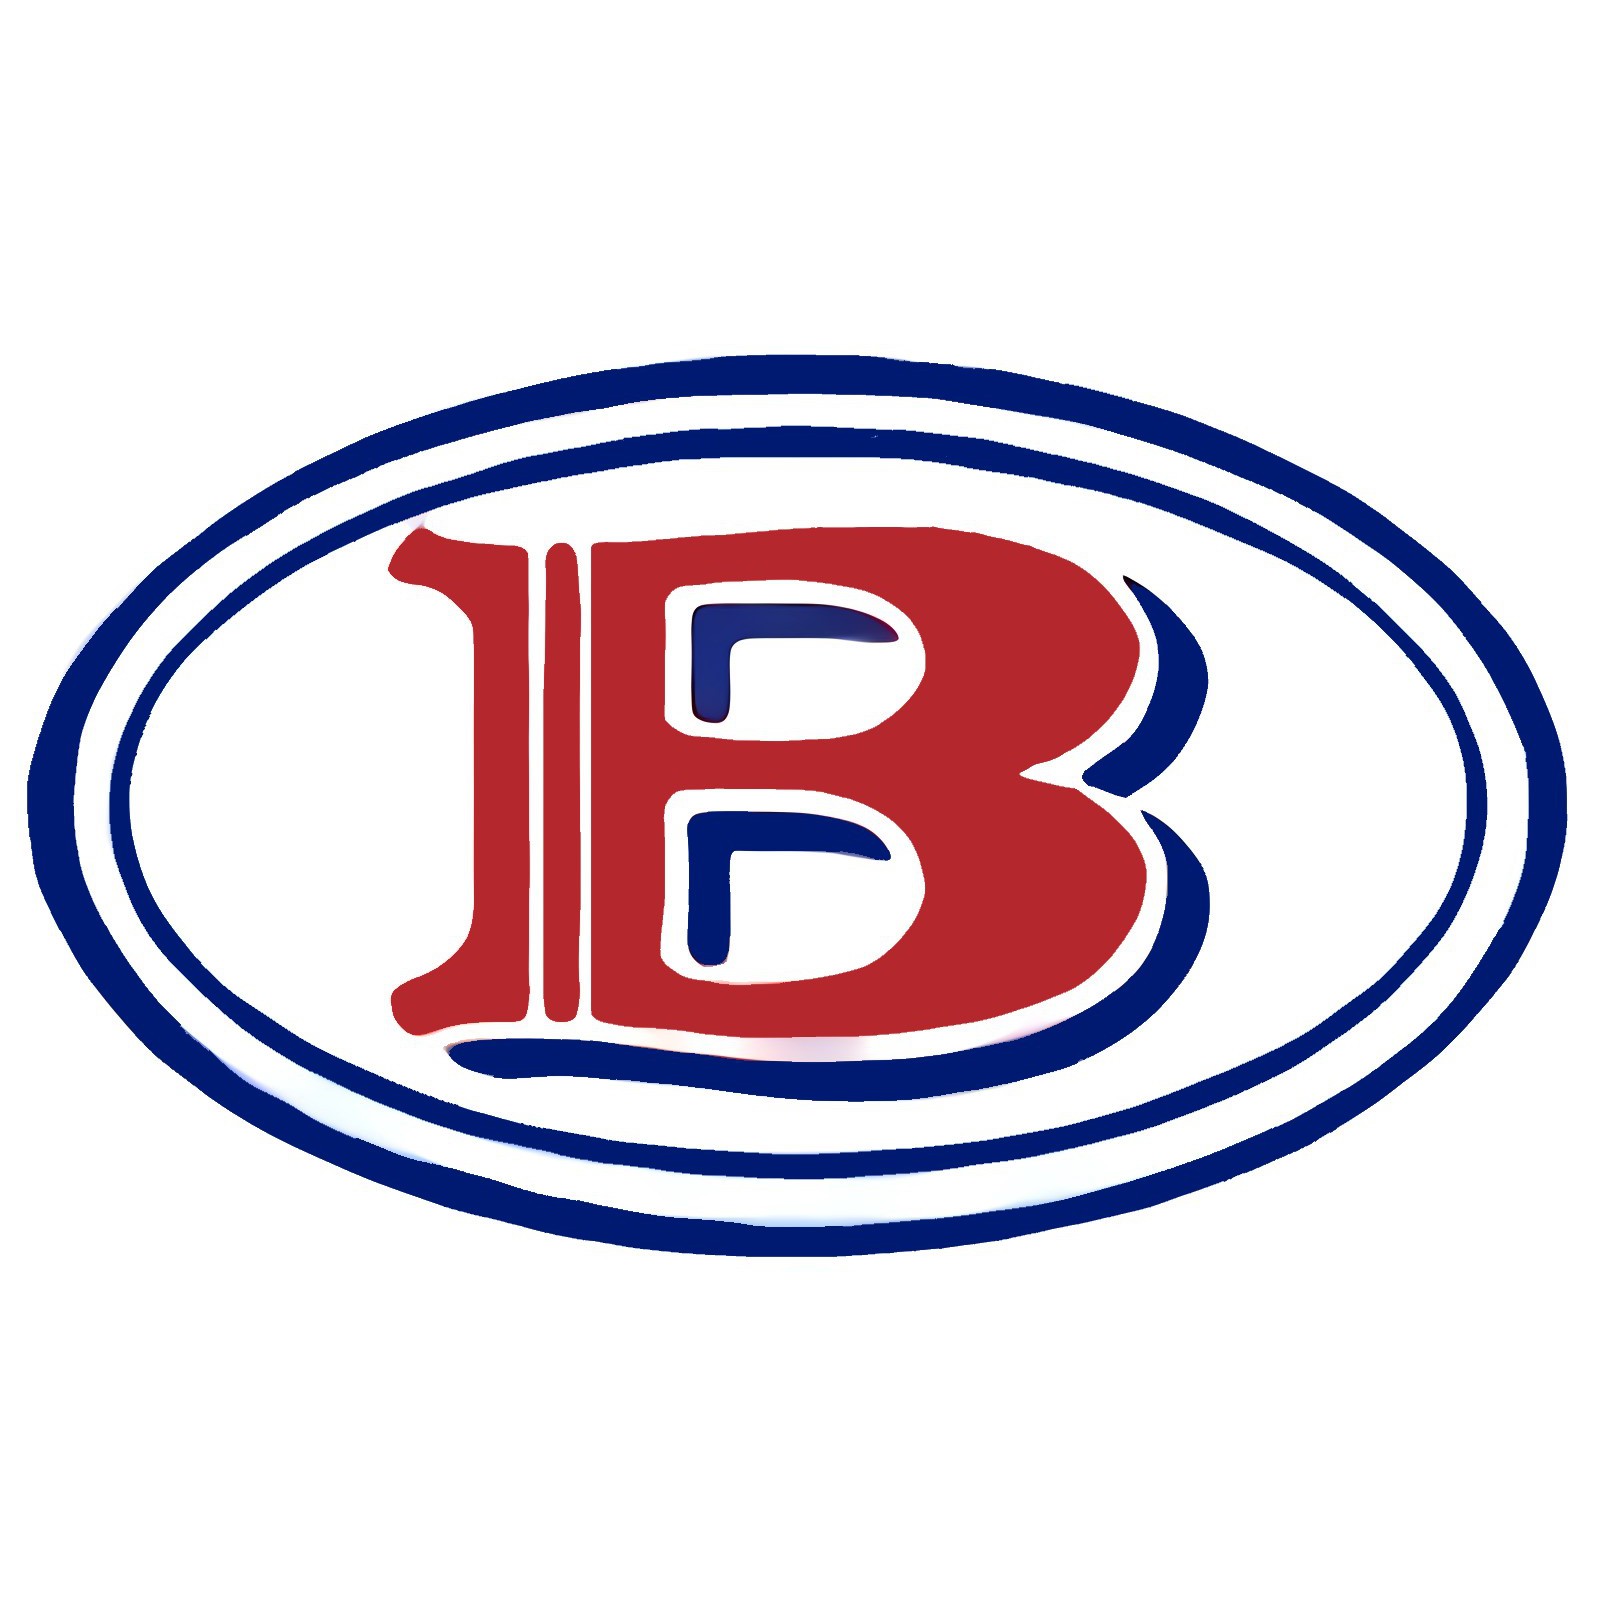 Bush's Proteins HO (A J Bush & Sons (Manufactures) Pty Ltd) Logo